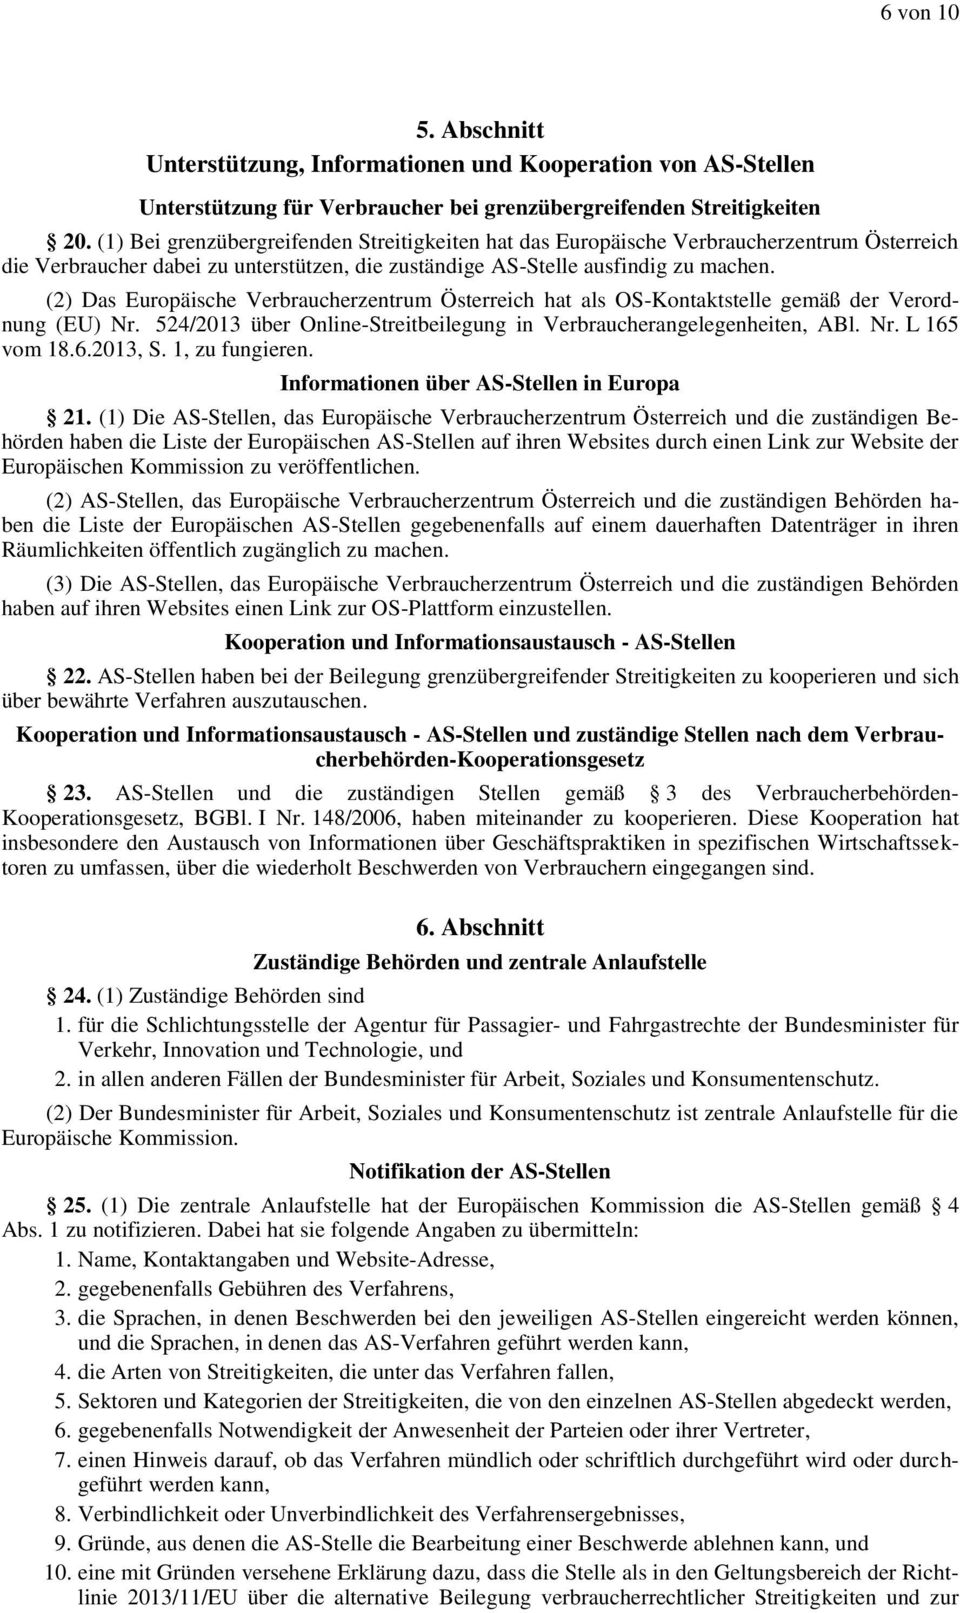 (2) Das Europäische Verbraucherzentrum Österreich hat als OS-Kontaktstelle gemäß der Verordnung (EU) Nr. 524/2013 über Online-Streitbeilegung in Verbraucherangelegenheiten, ABl. Nr. L 165 vom 18.6.2013, S.